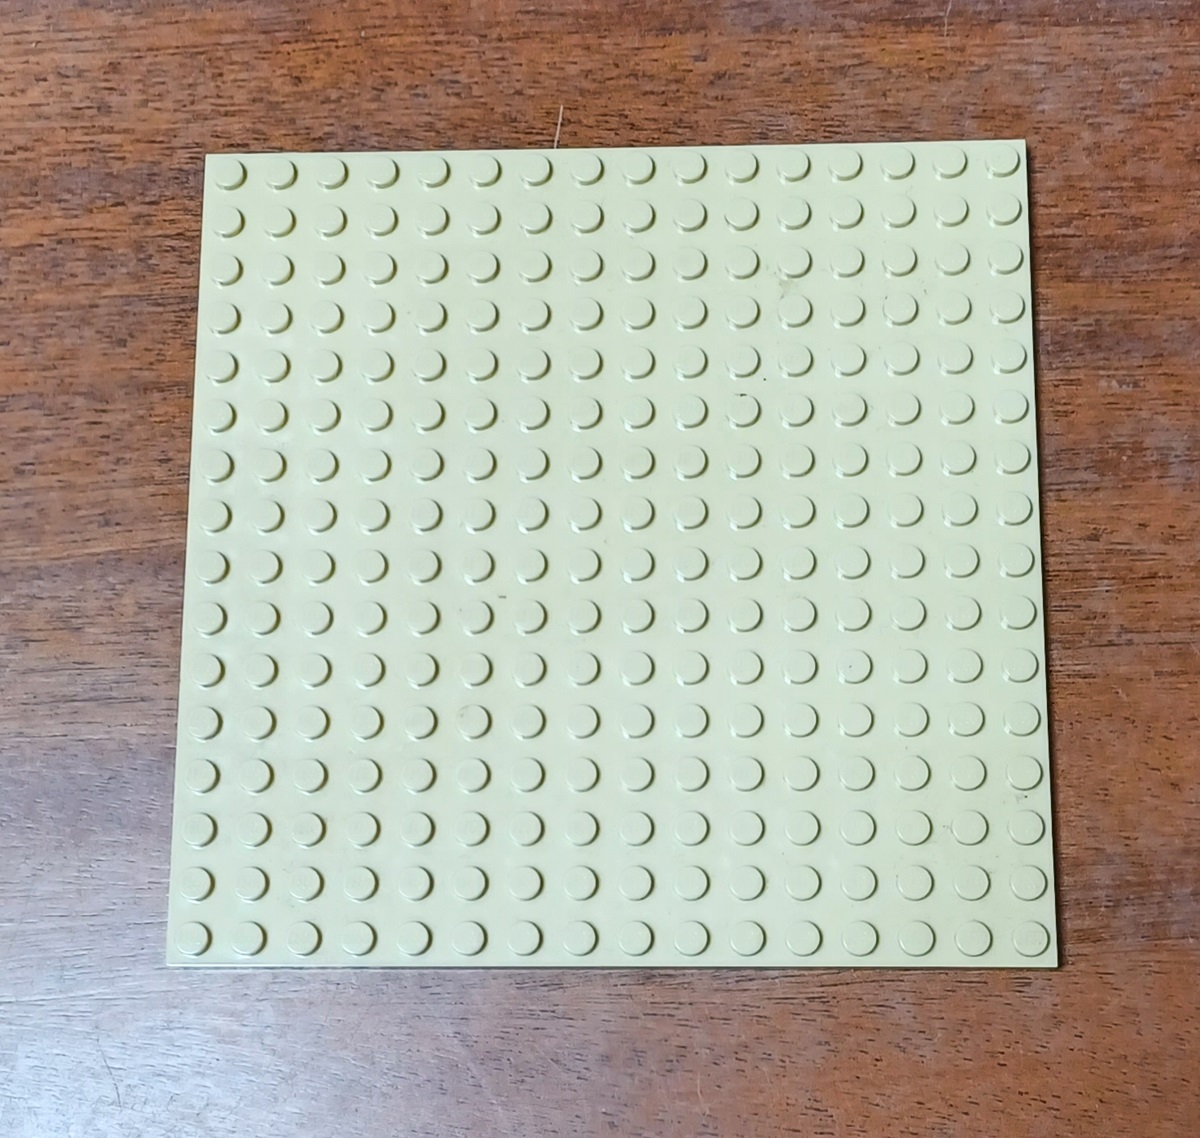 0240 Lego plade 16 * 16